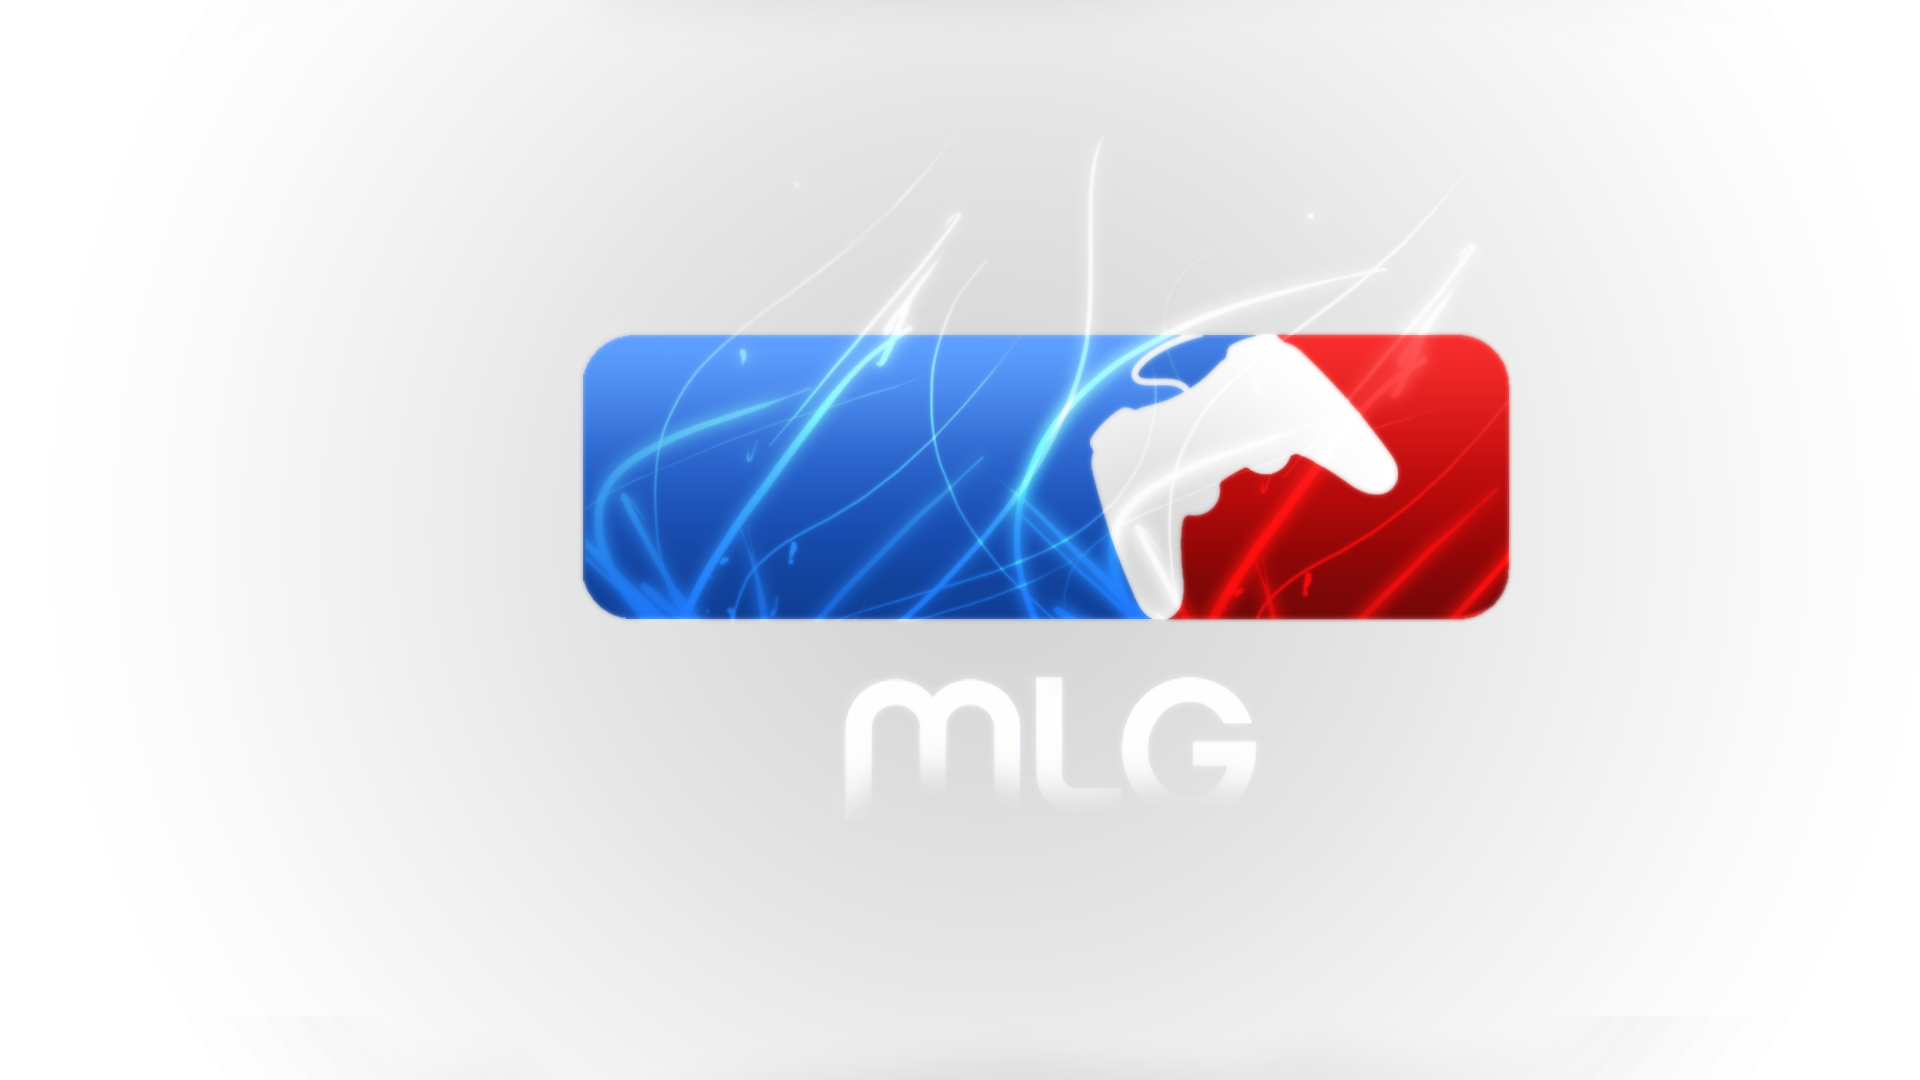 Major League Gaming Logo Activision Blizzard Entertainment 1920x1080